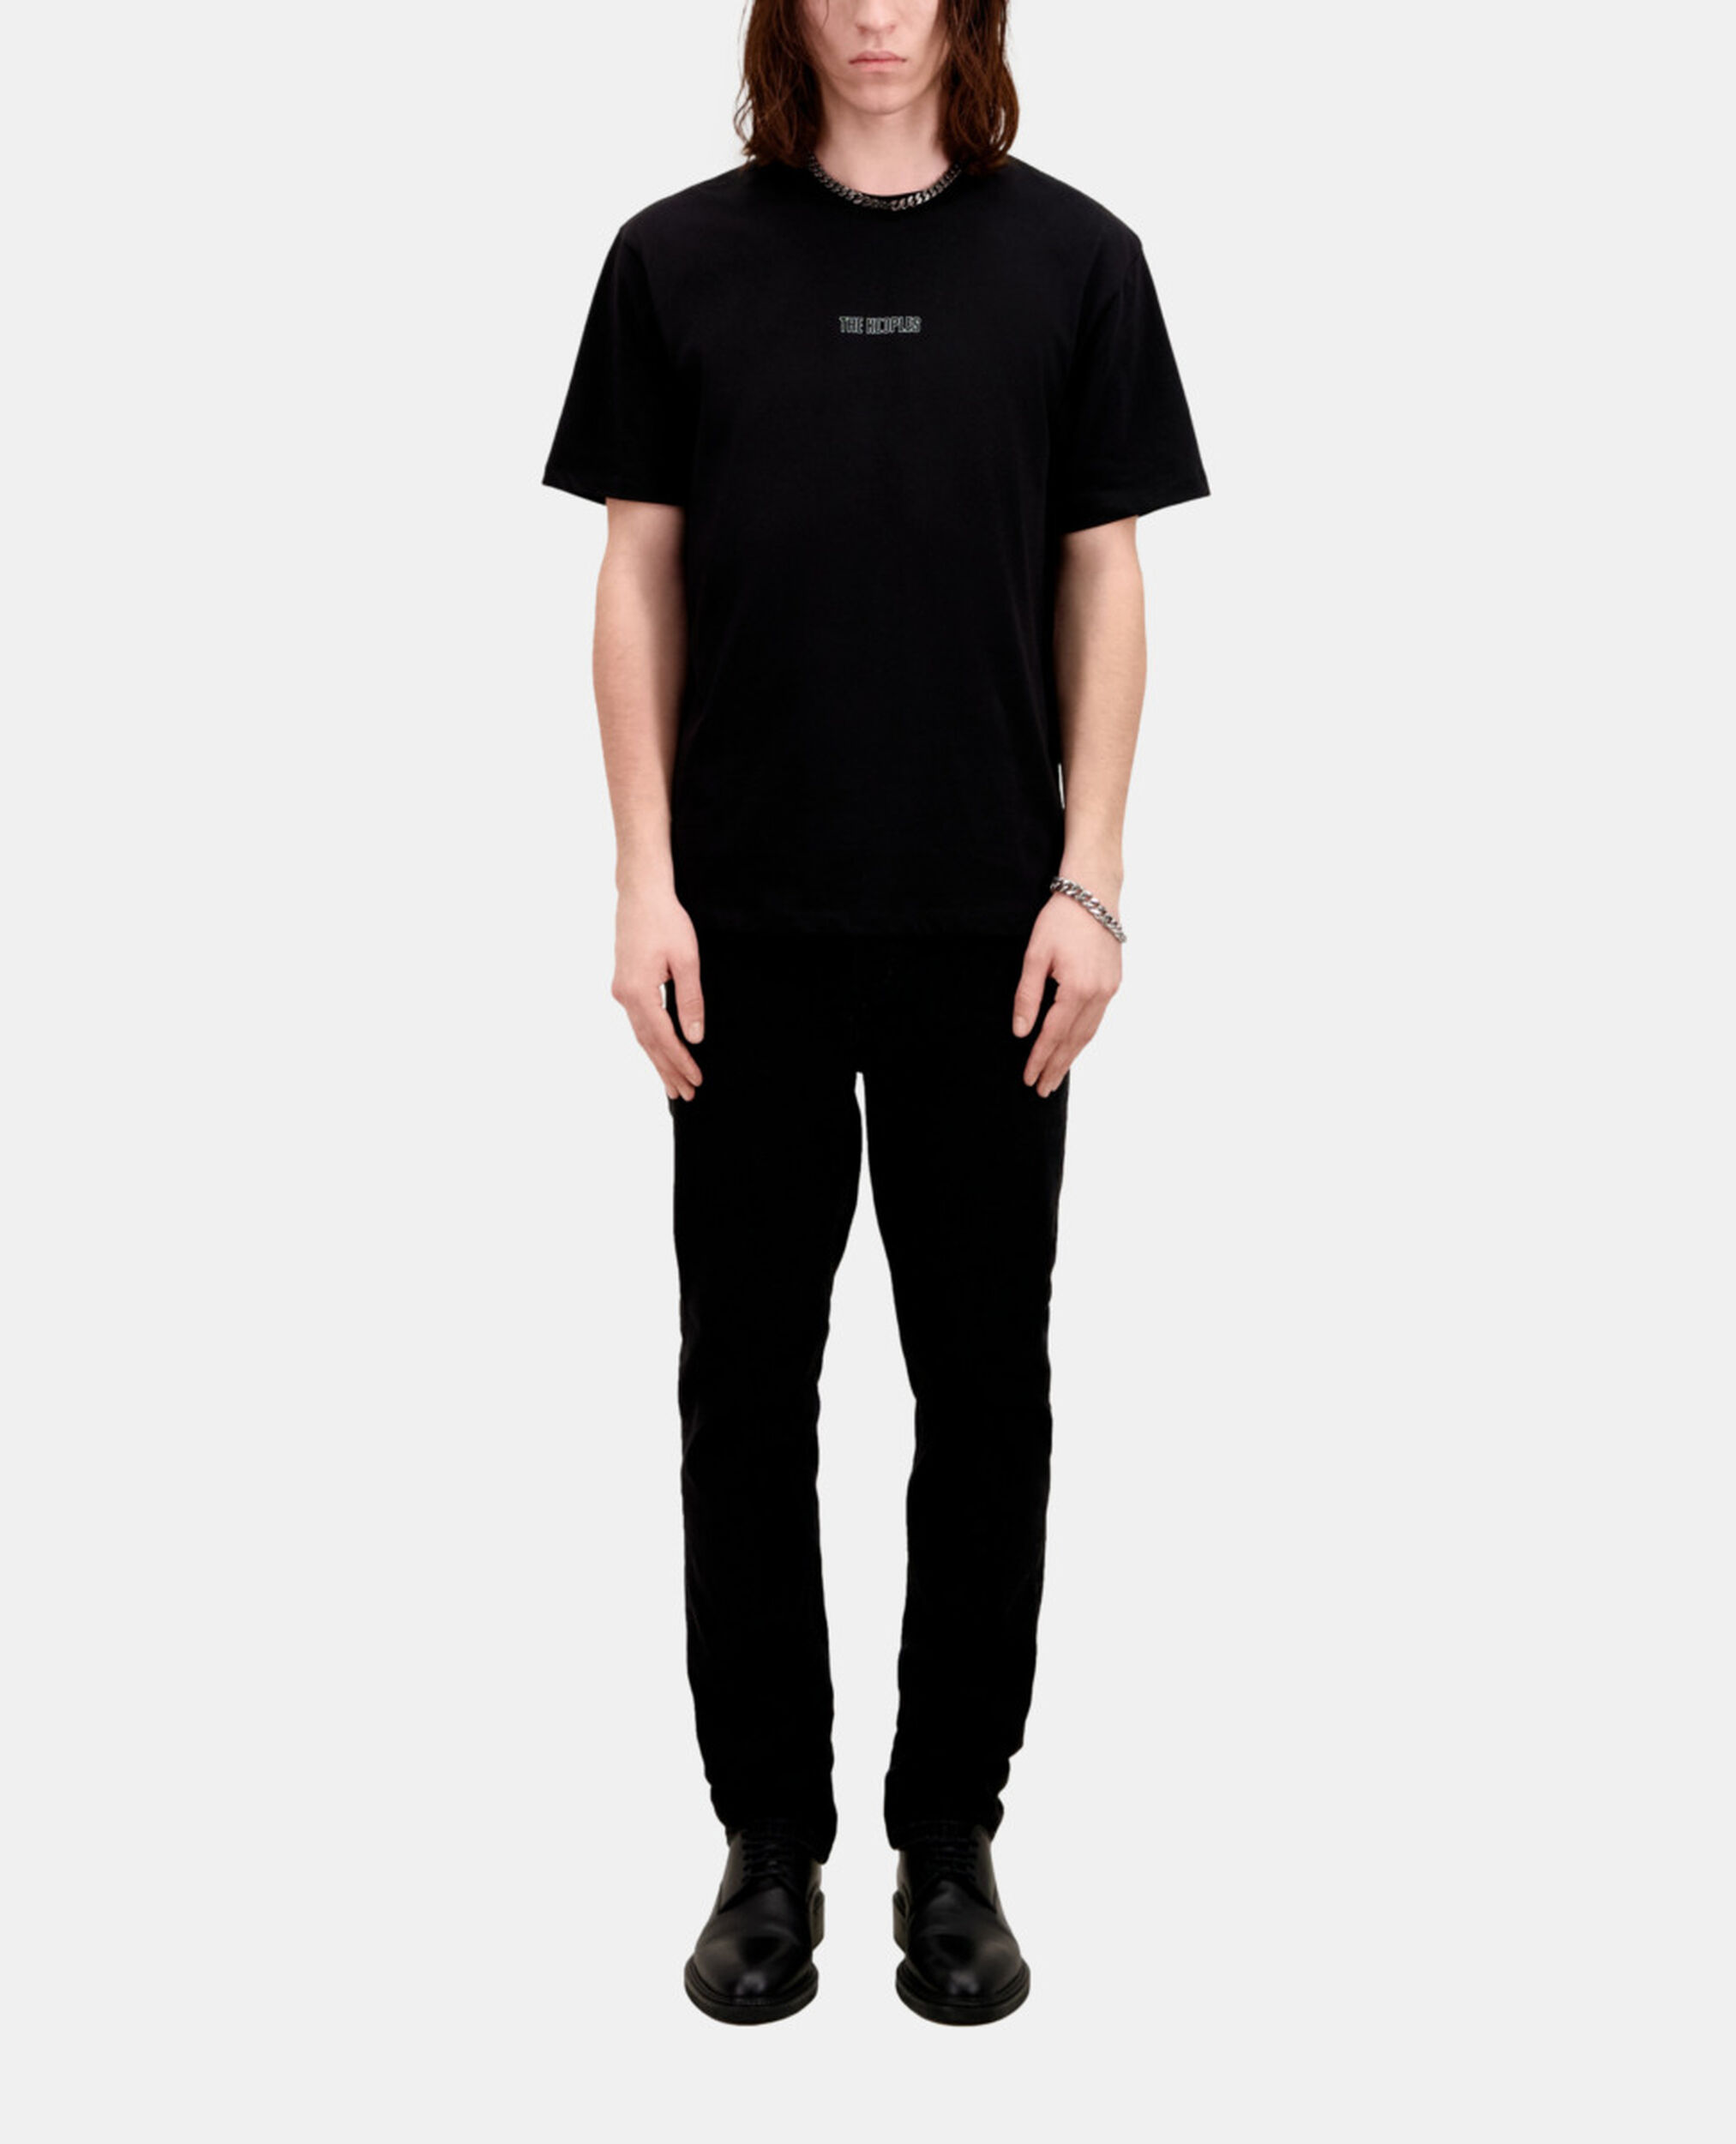 Men's black t-shirt with logo, BLACK, hi-res image number null